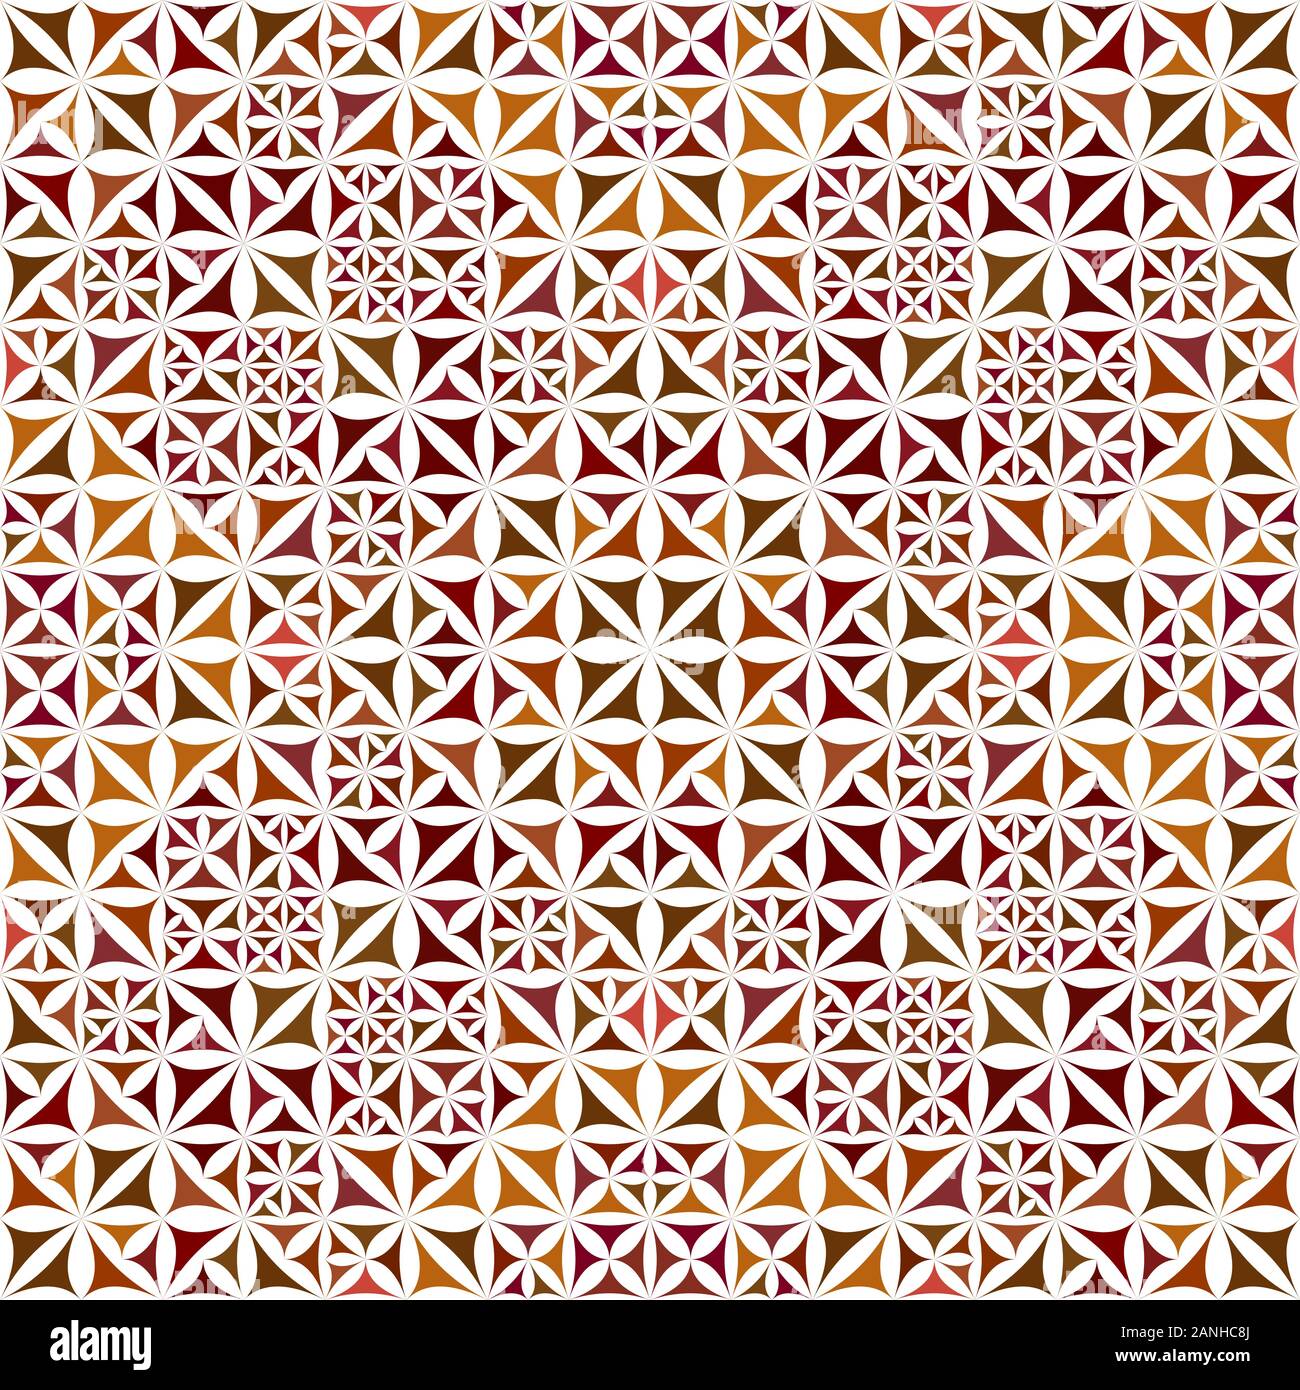 Featured image of post Wallpaper Triangulos Coloridos Art de triangle juegos de formas carteras y bolsos pinturas bordado colores disenos de unas impresiones de lona